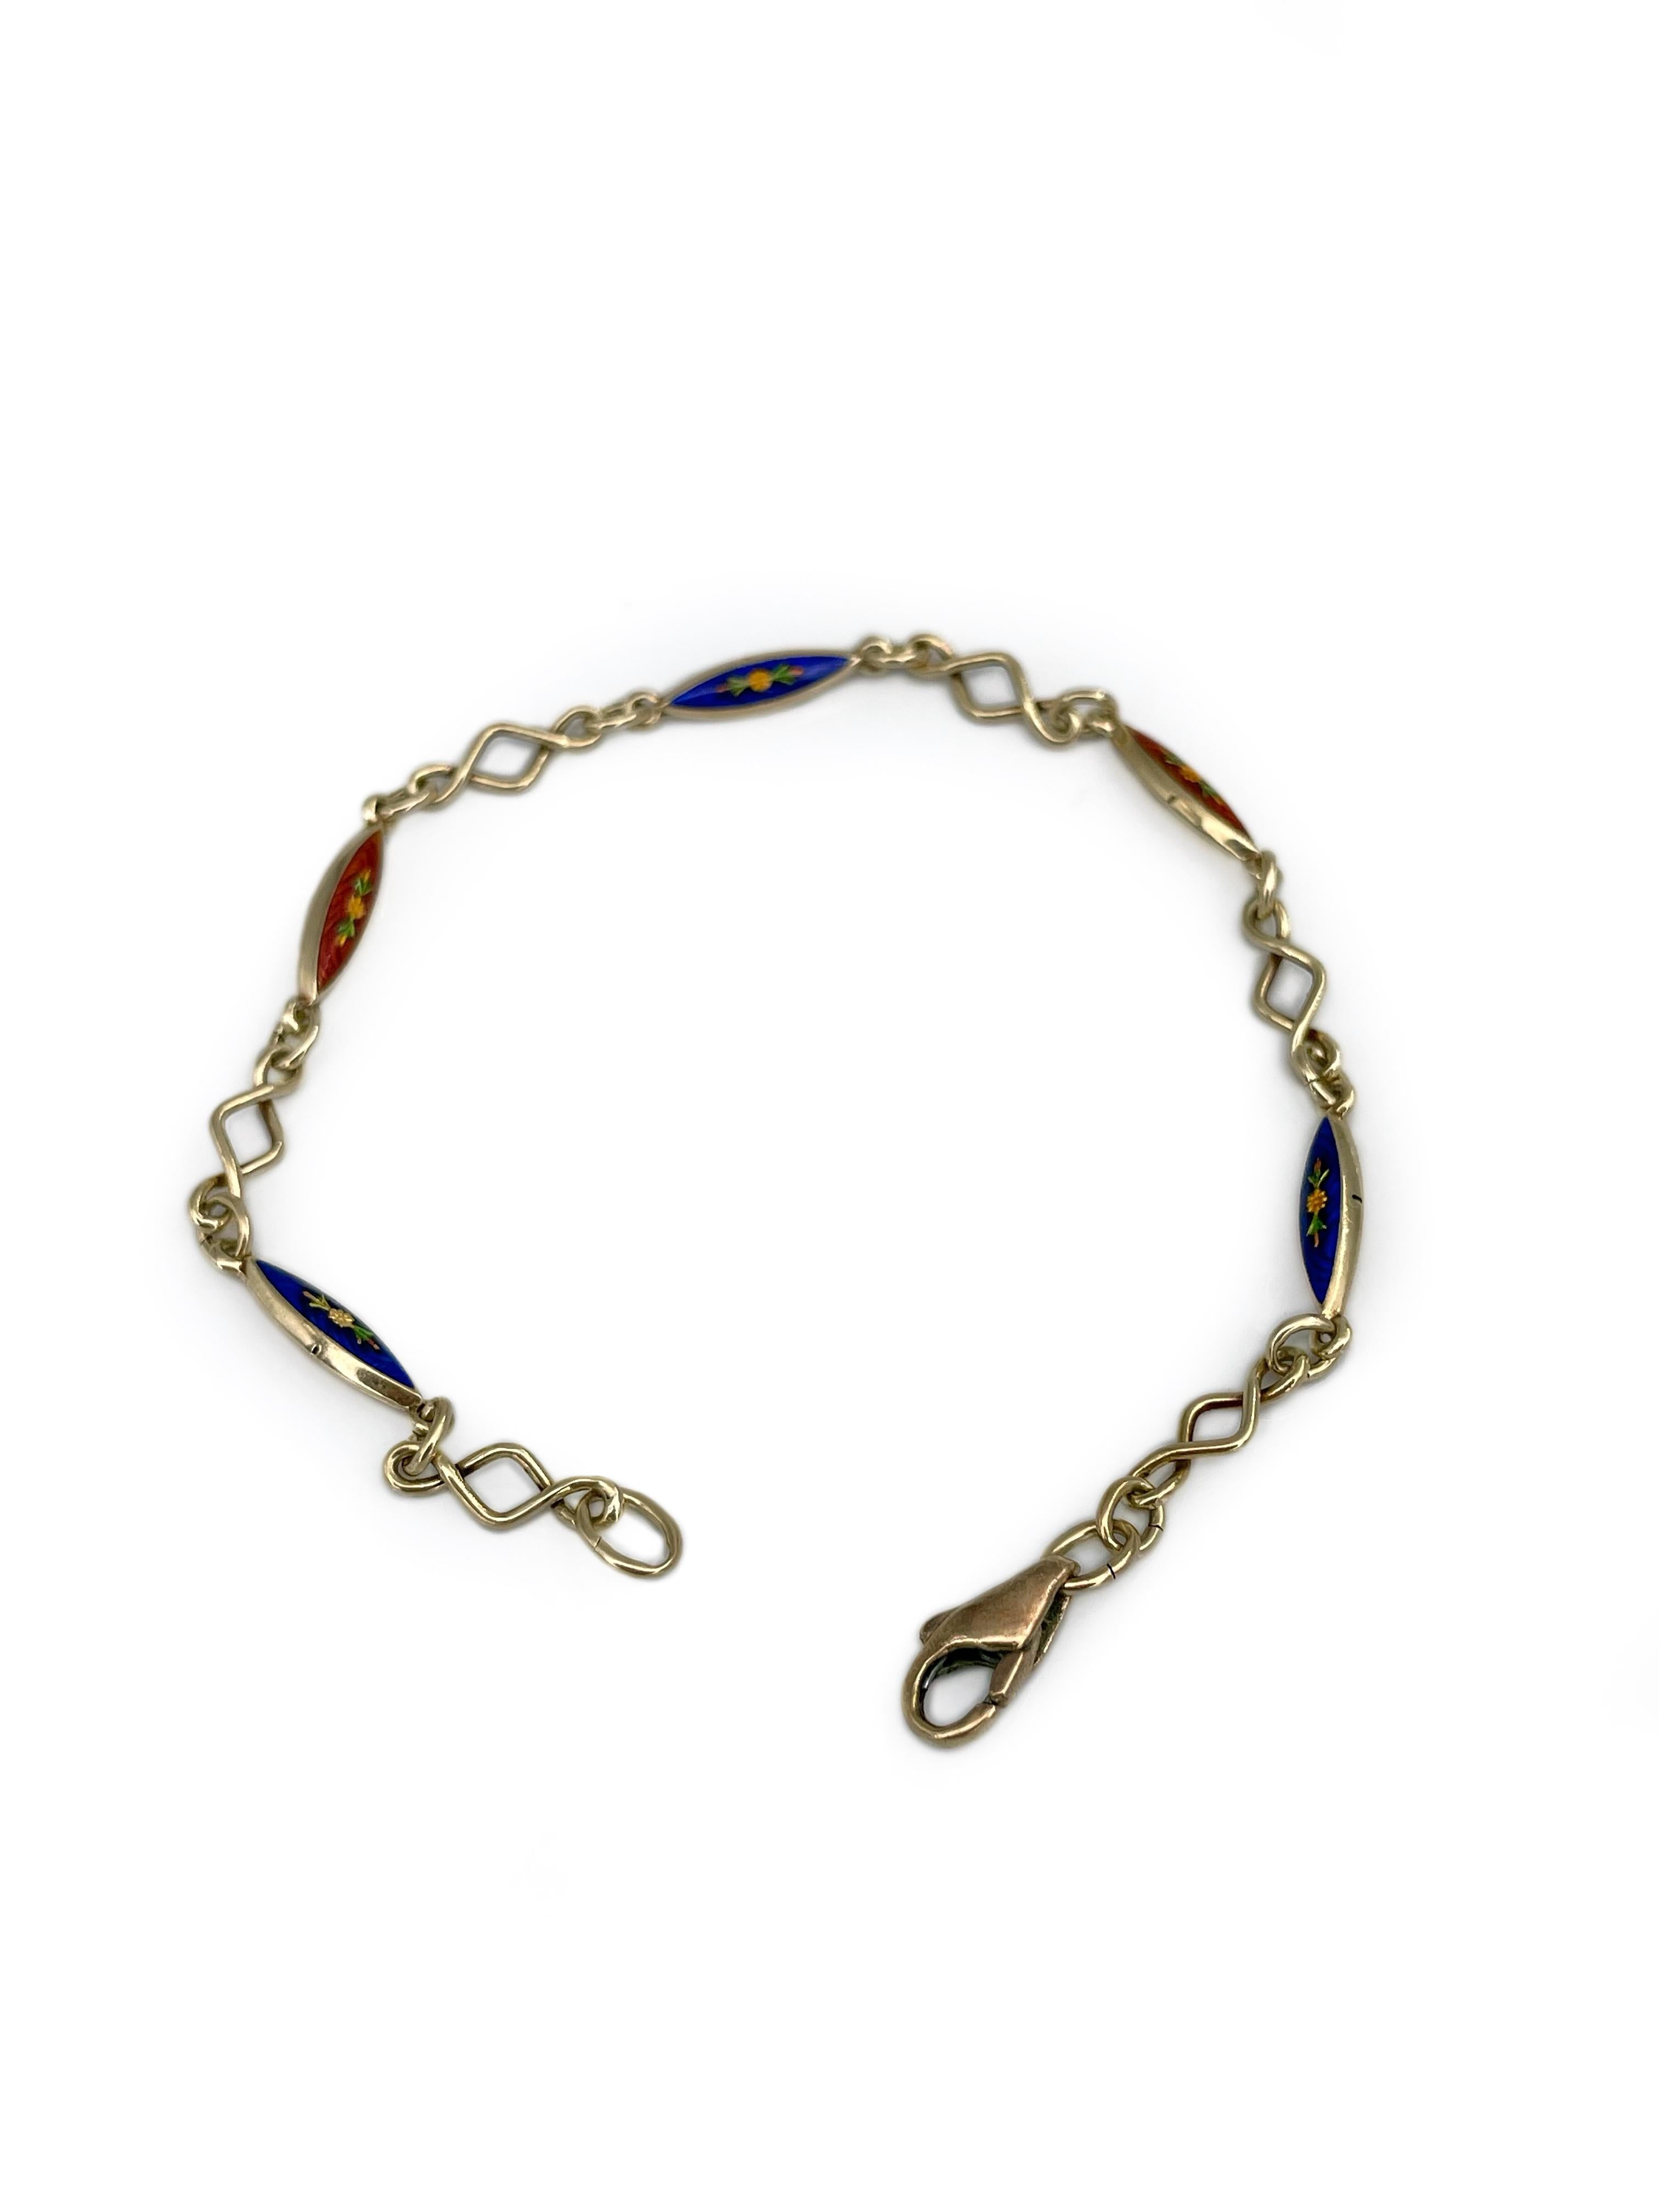 Women's Victorian 14 Karat Gold Red Blue Enamel Chain Bracelet For Sale